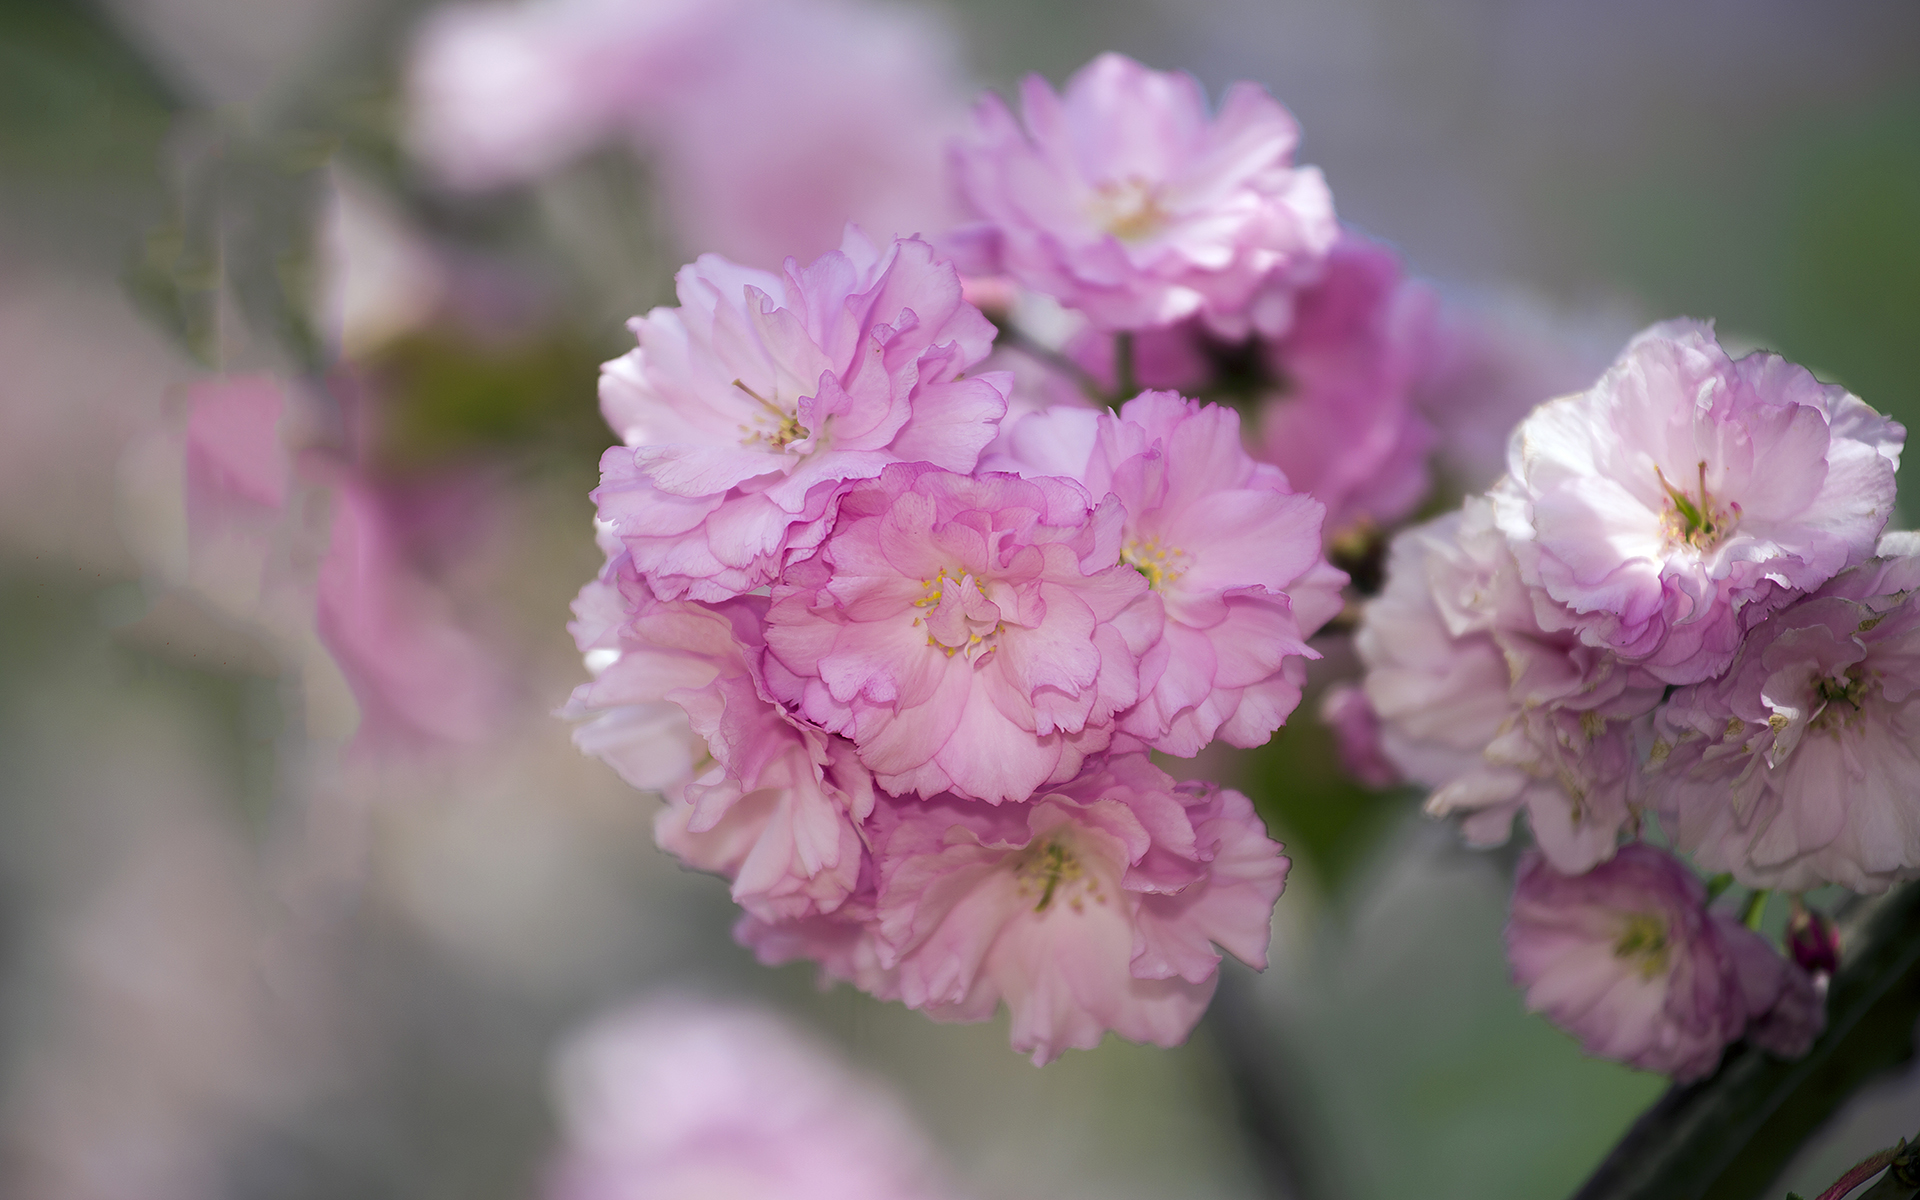 简单清新淡雅的图片 唯美花卉植物摄影高清图片(4)